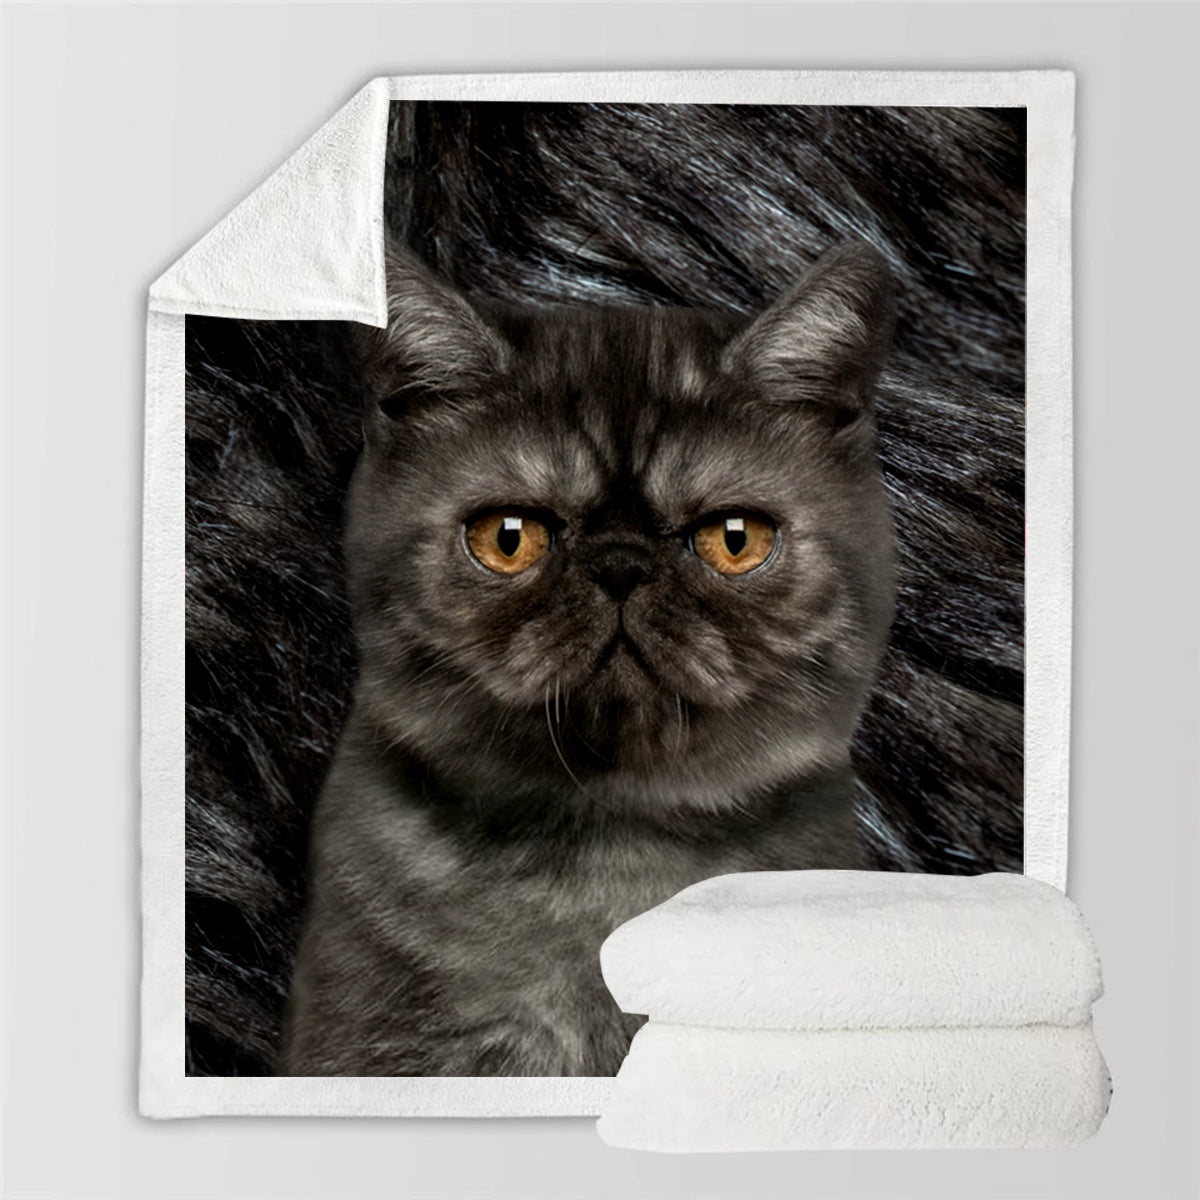 Exotic Shorthair Cat Blanket